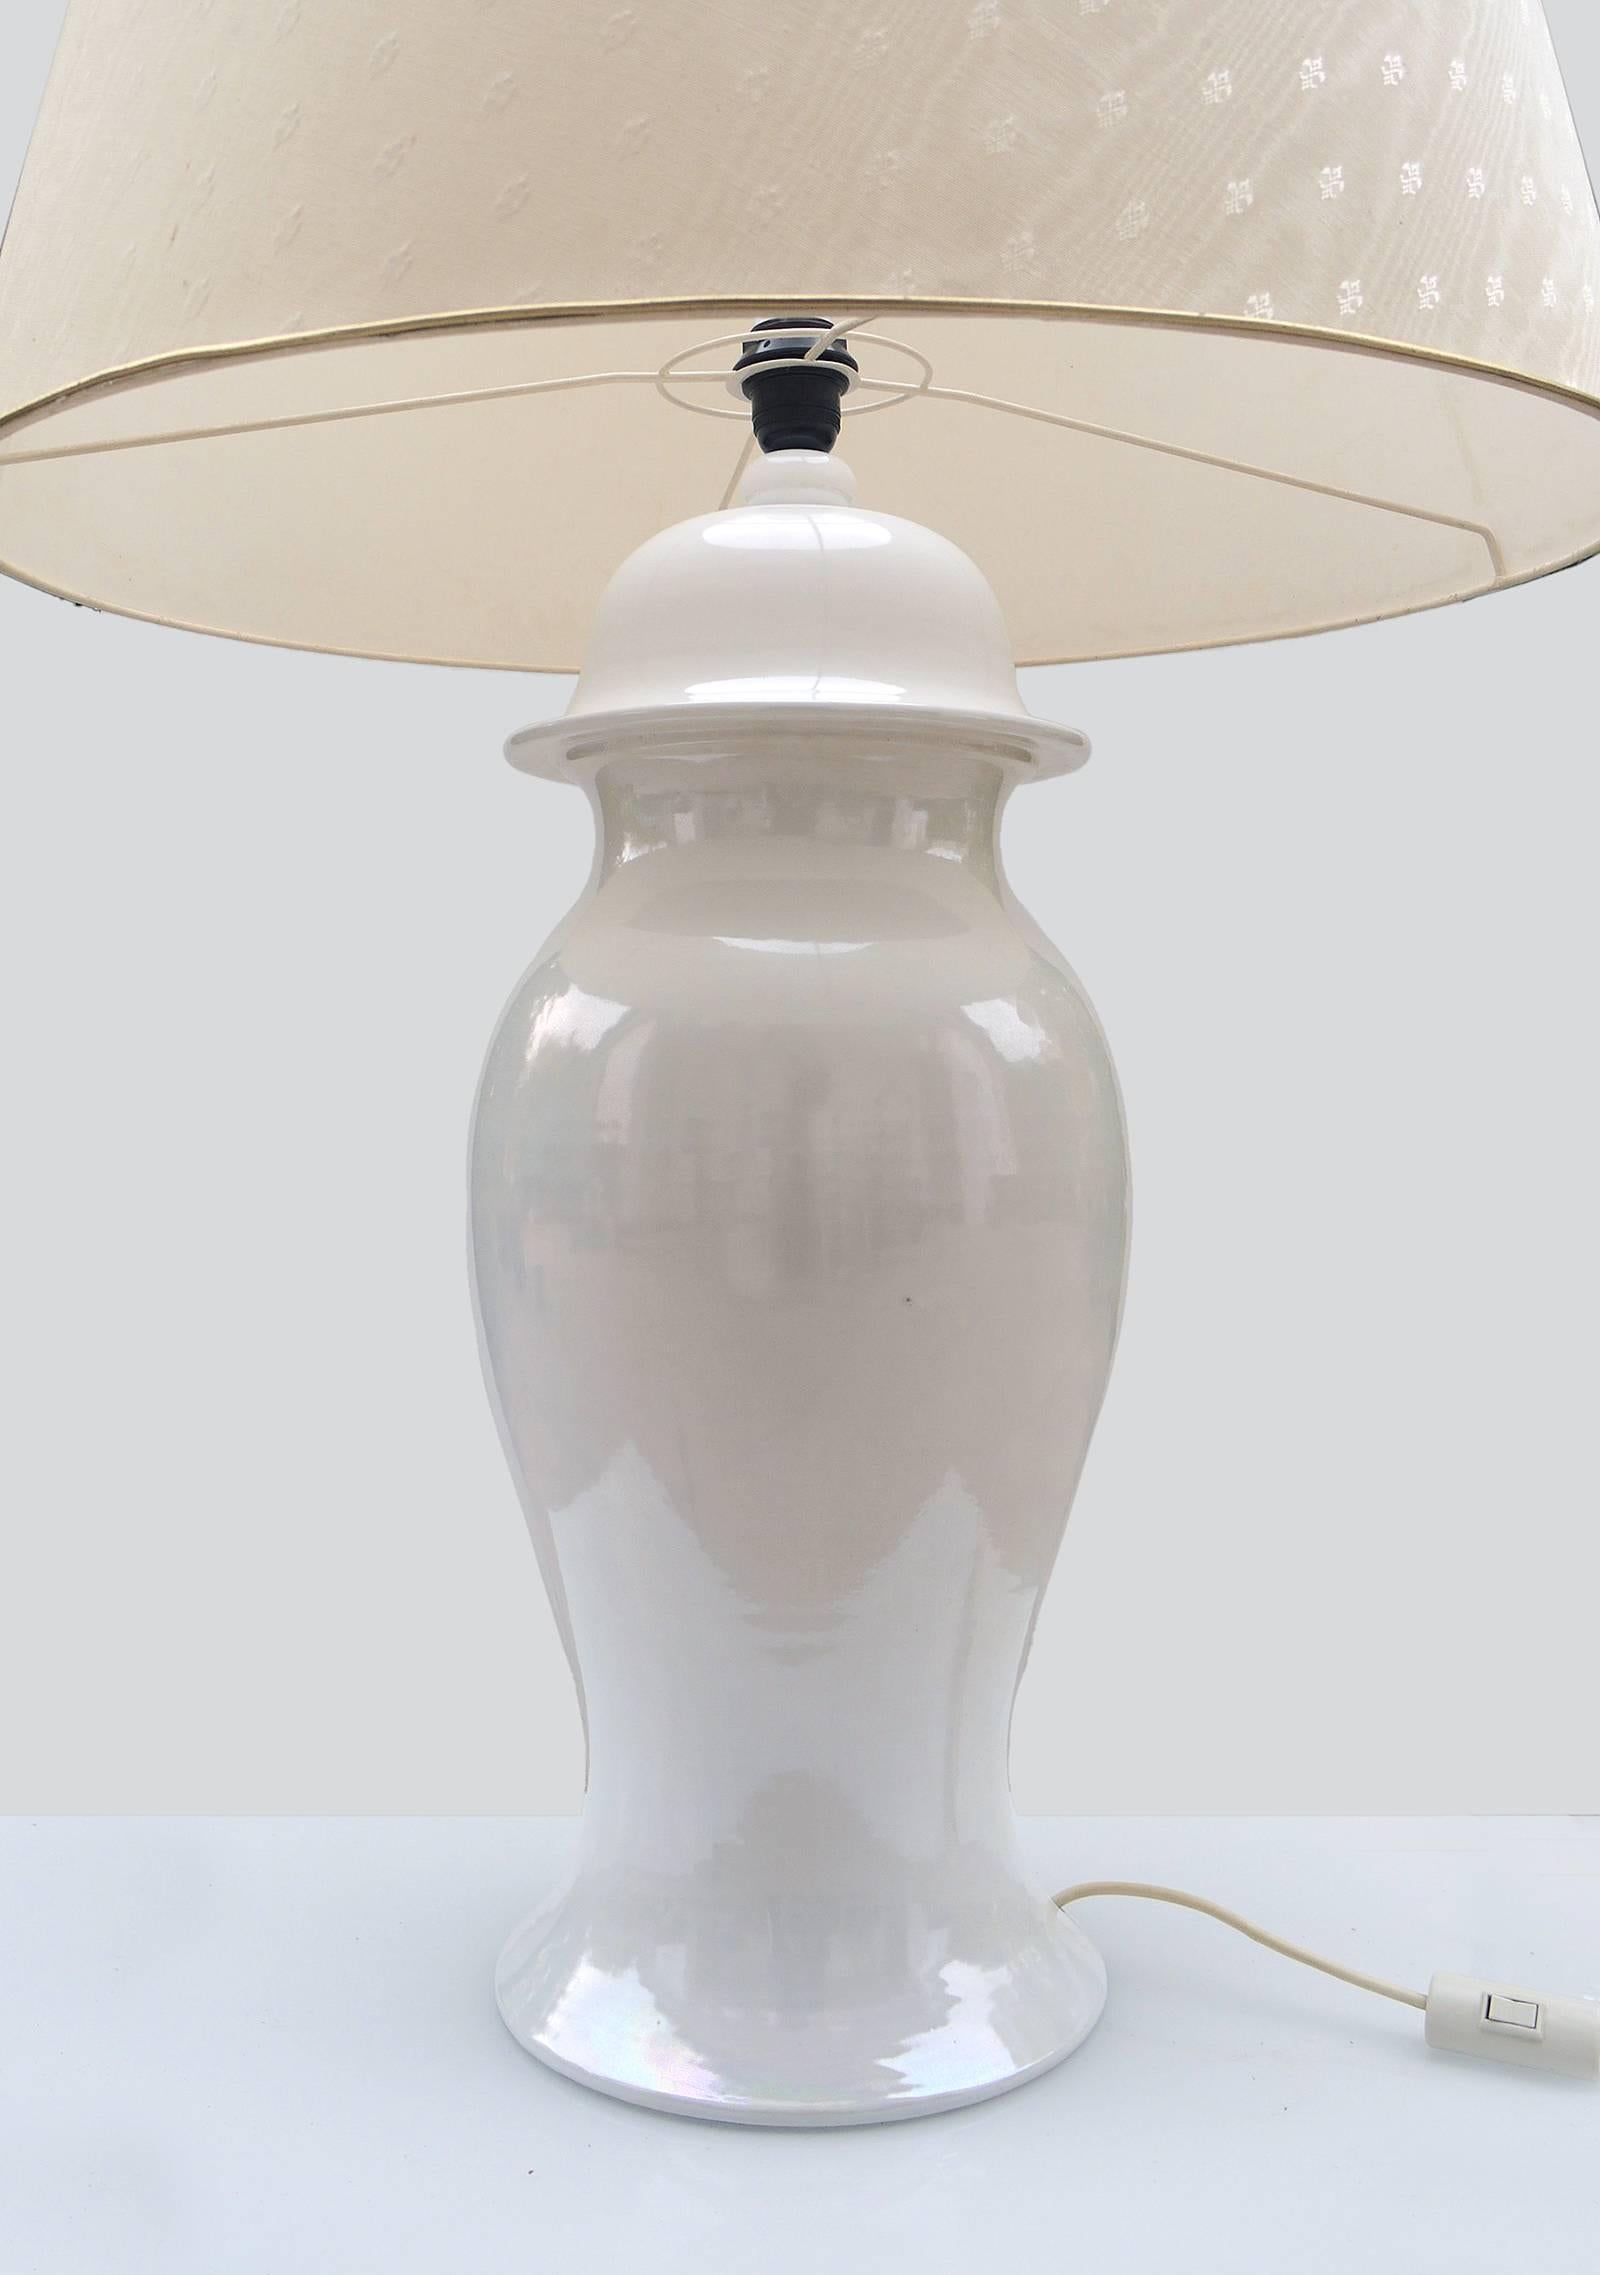 Elegante seltene, riesige Tommaso Barbi Ingwer Glas Keramik Lampe in Italien in den 1960er Jahren gemacht. Elfenbeinfarbener Keramiksockel, originaler Stoffschirm mit Emblem-Muster. Signiert am Sockel. 
 
Maße: Höhe mit Schirm 41.3